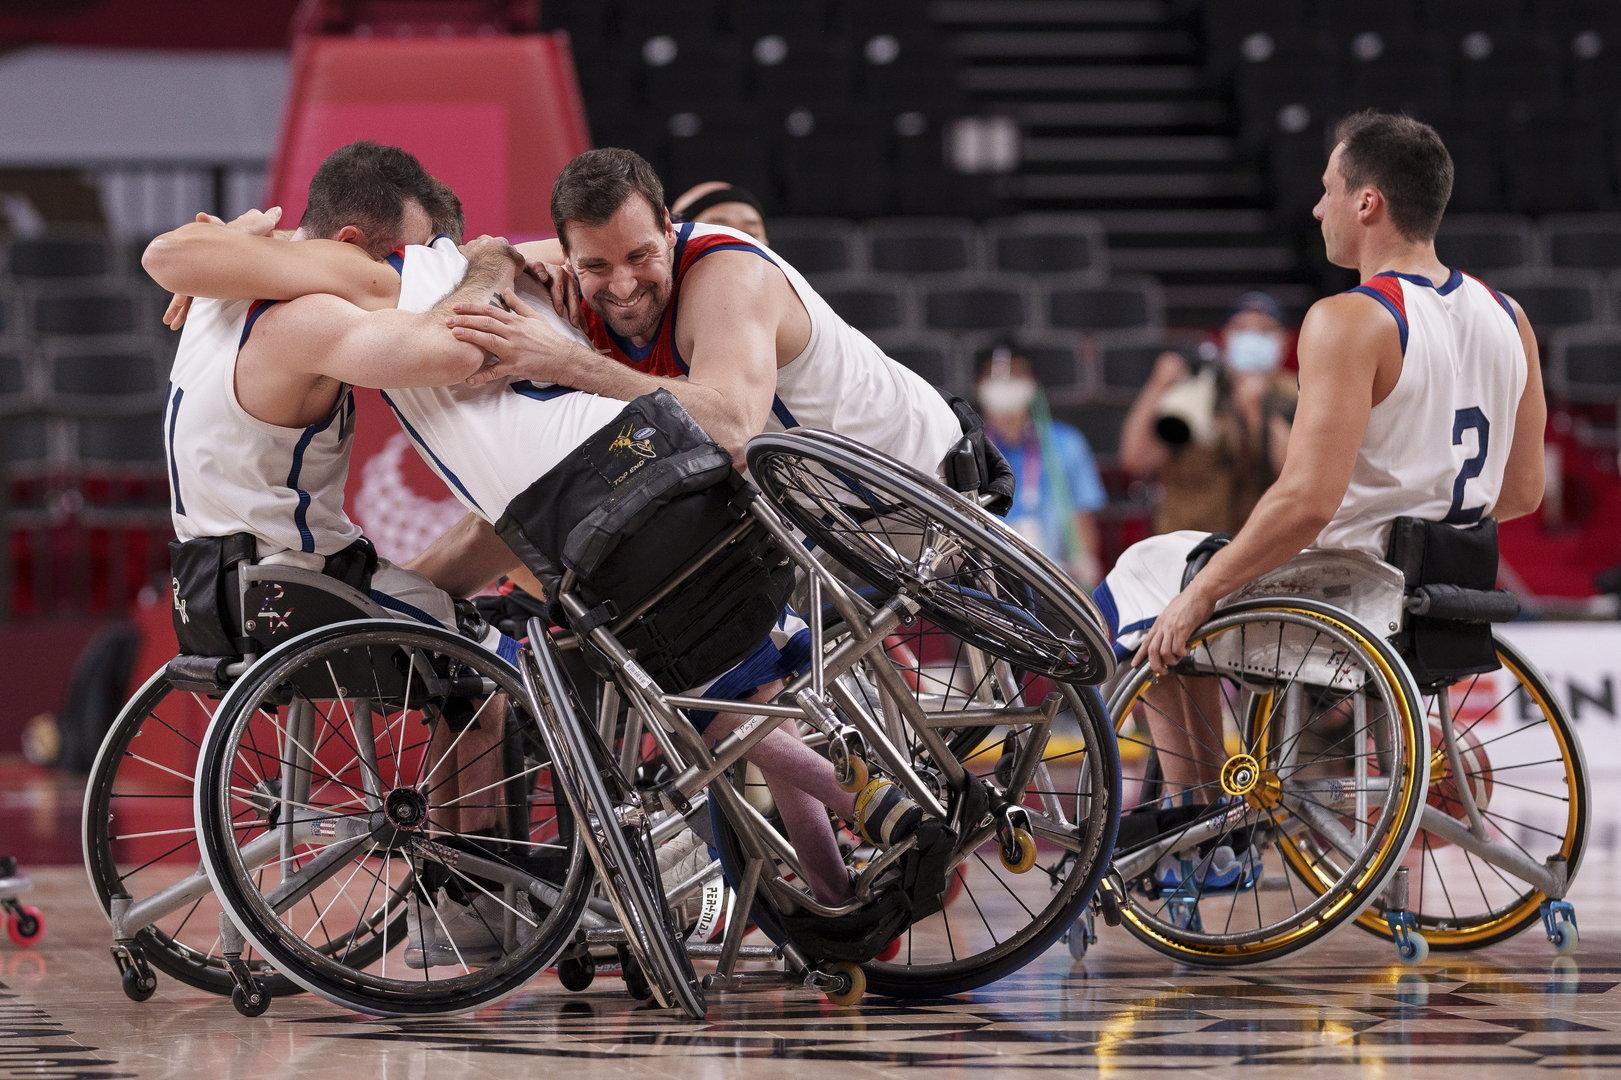 Die Paralympics sind beendet: Applaus für die wahren Helden